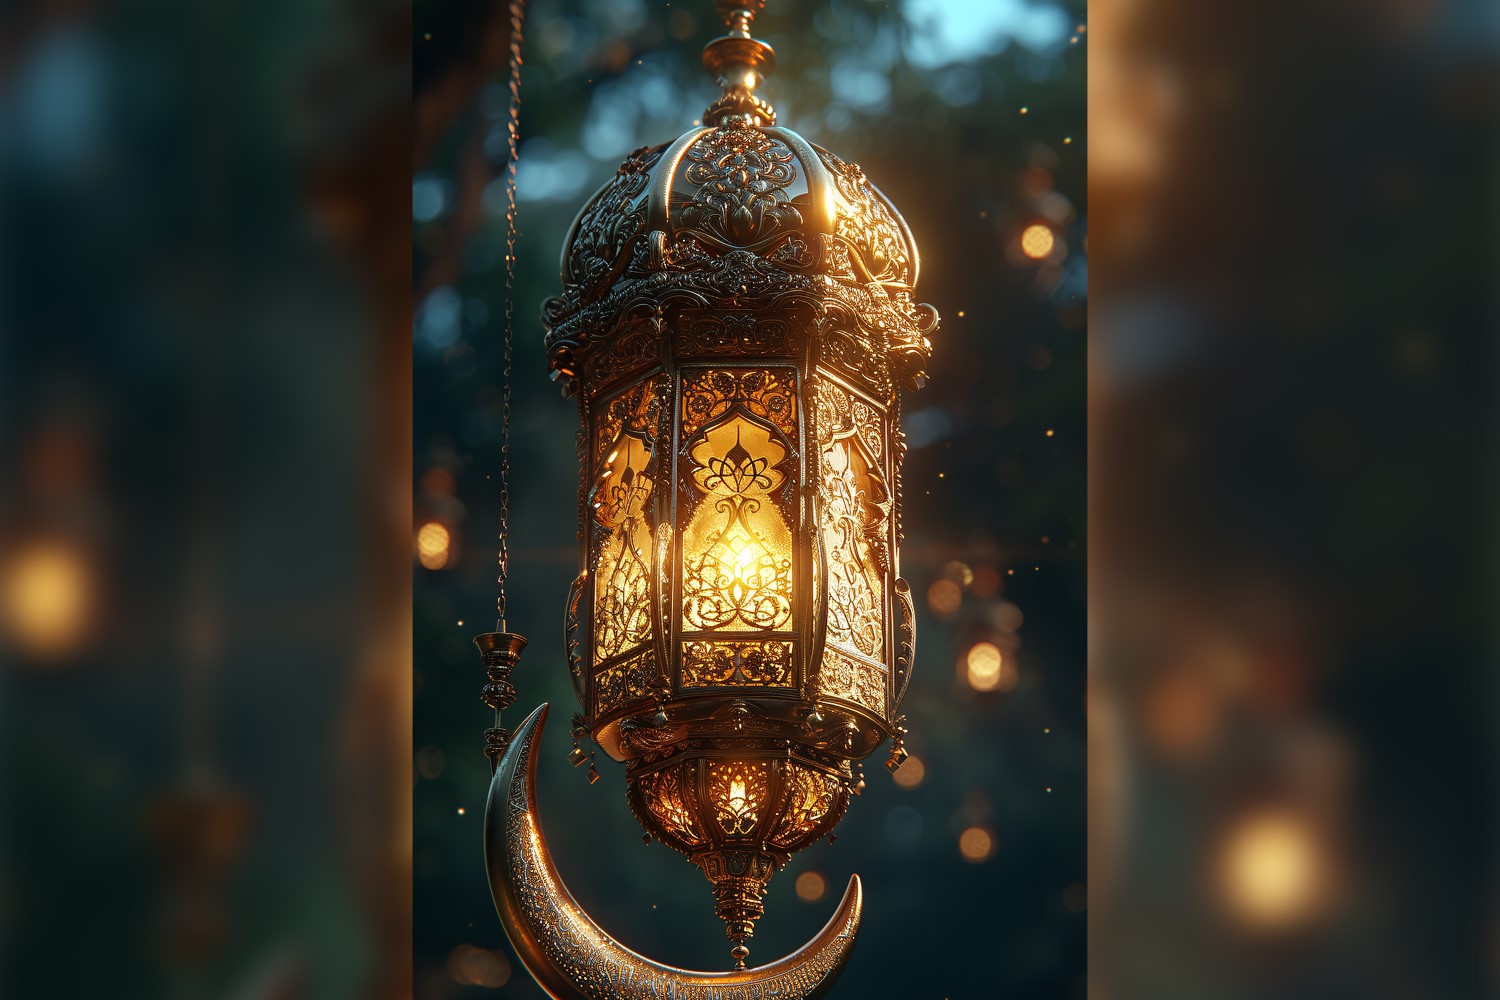 Ramadan Kareem greeting poster design with lantern and moon